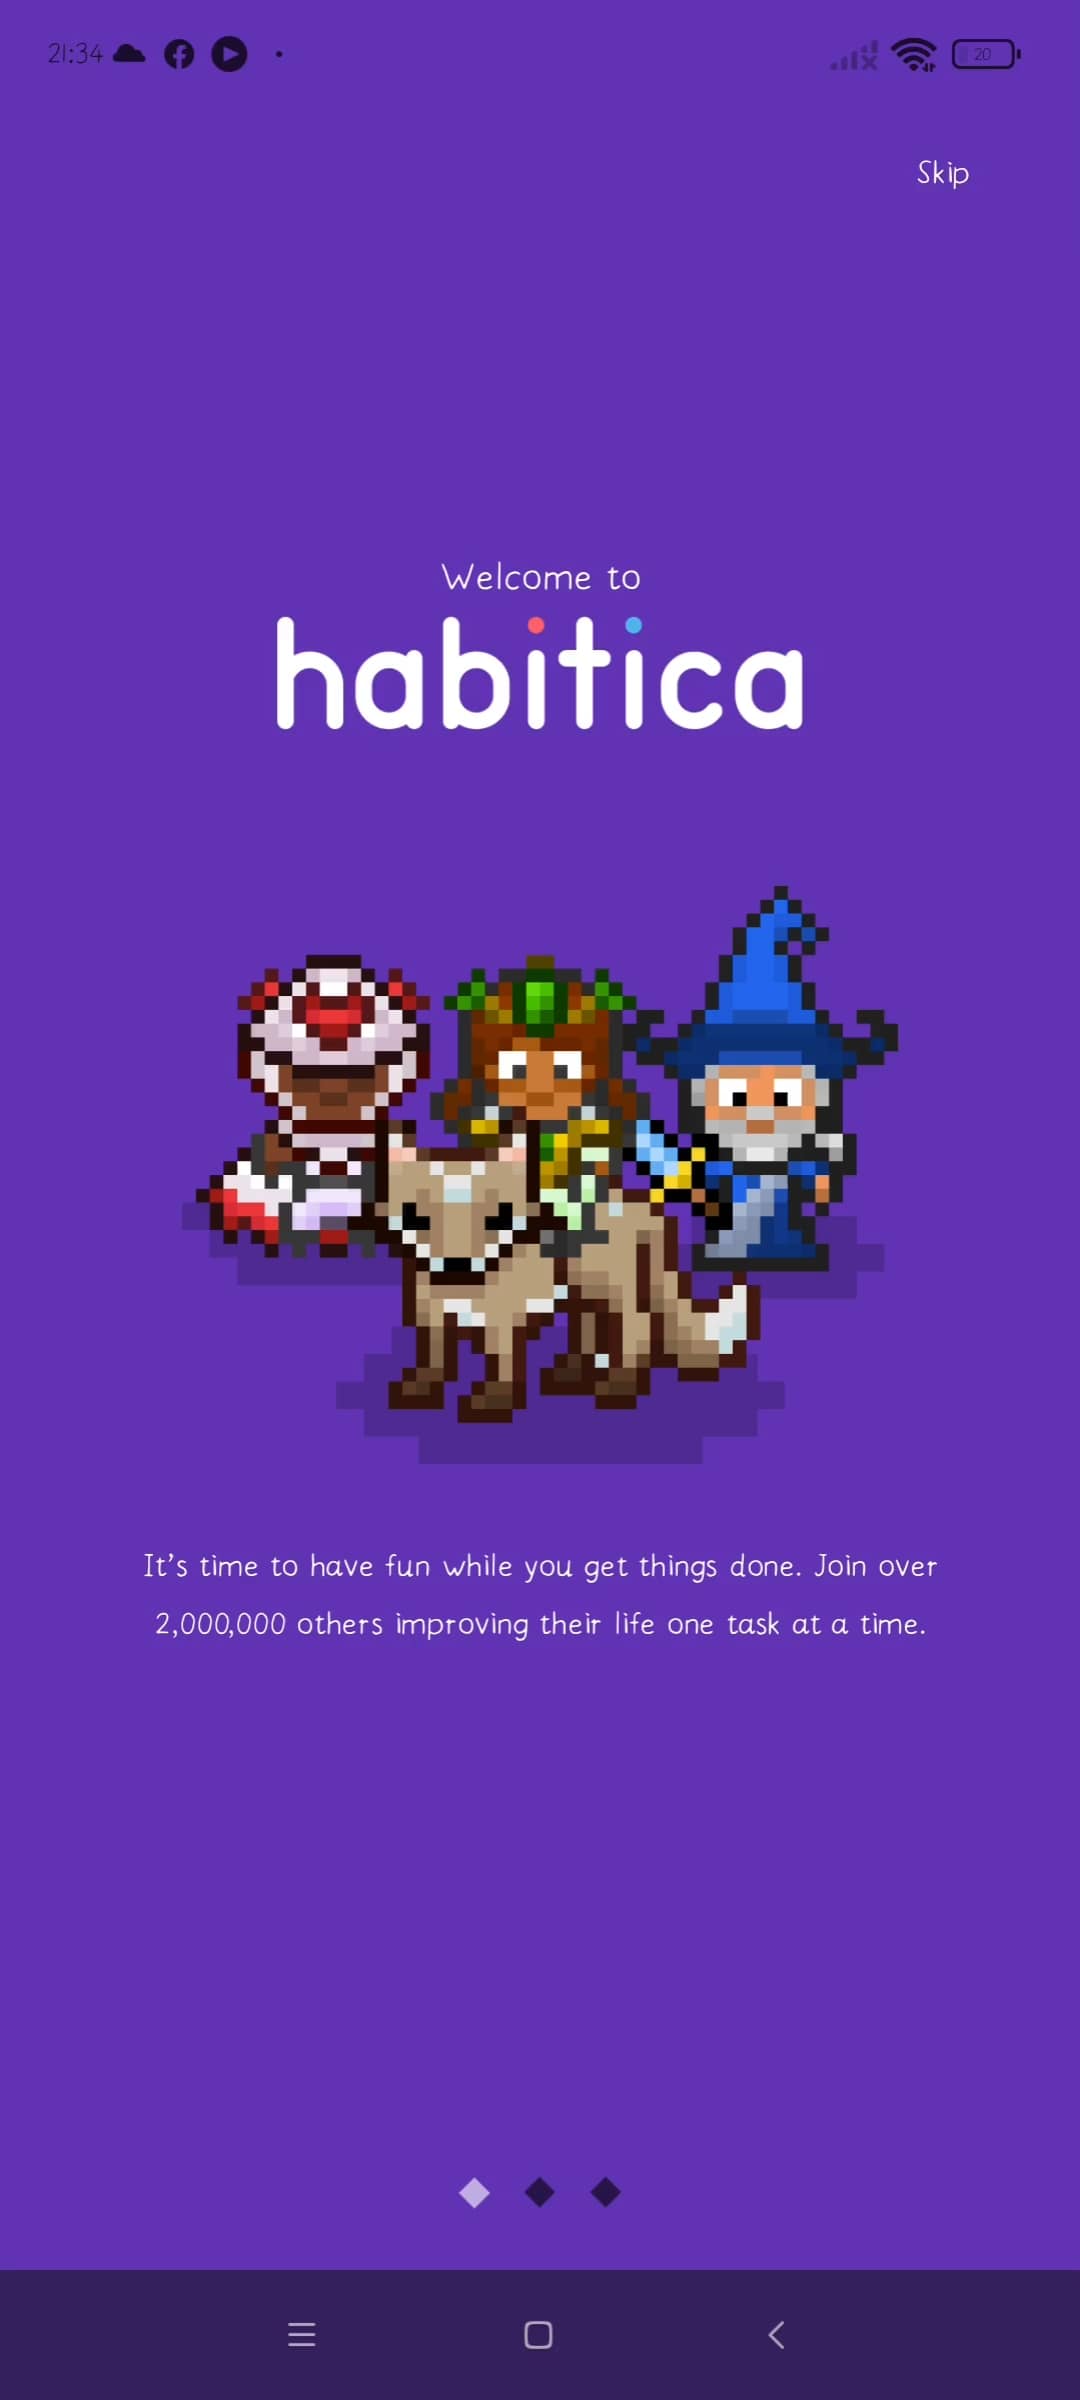 schermata di benvenuto della app Habitica. Lo sfondo è viola e ci sono tre personaggi in pixel art, di cui uno su una cavalcatura